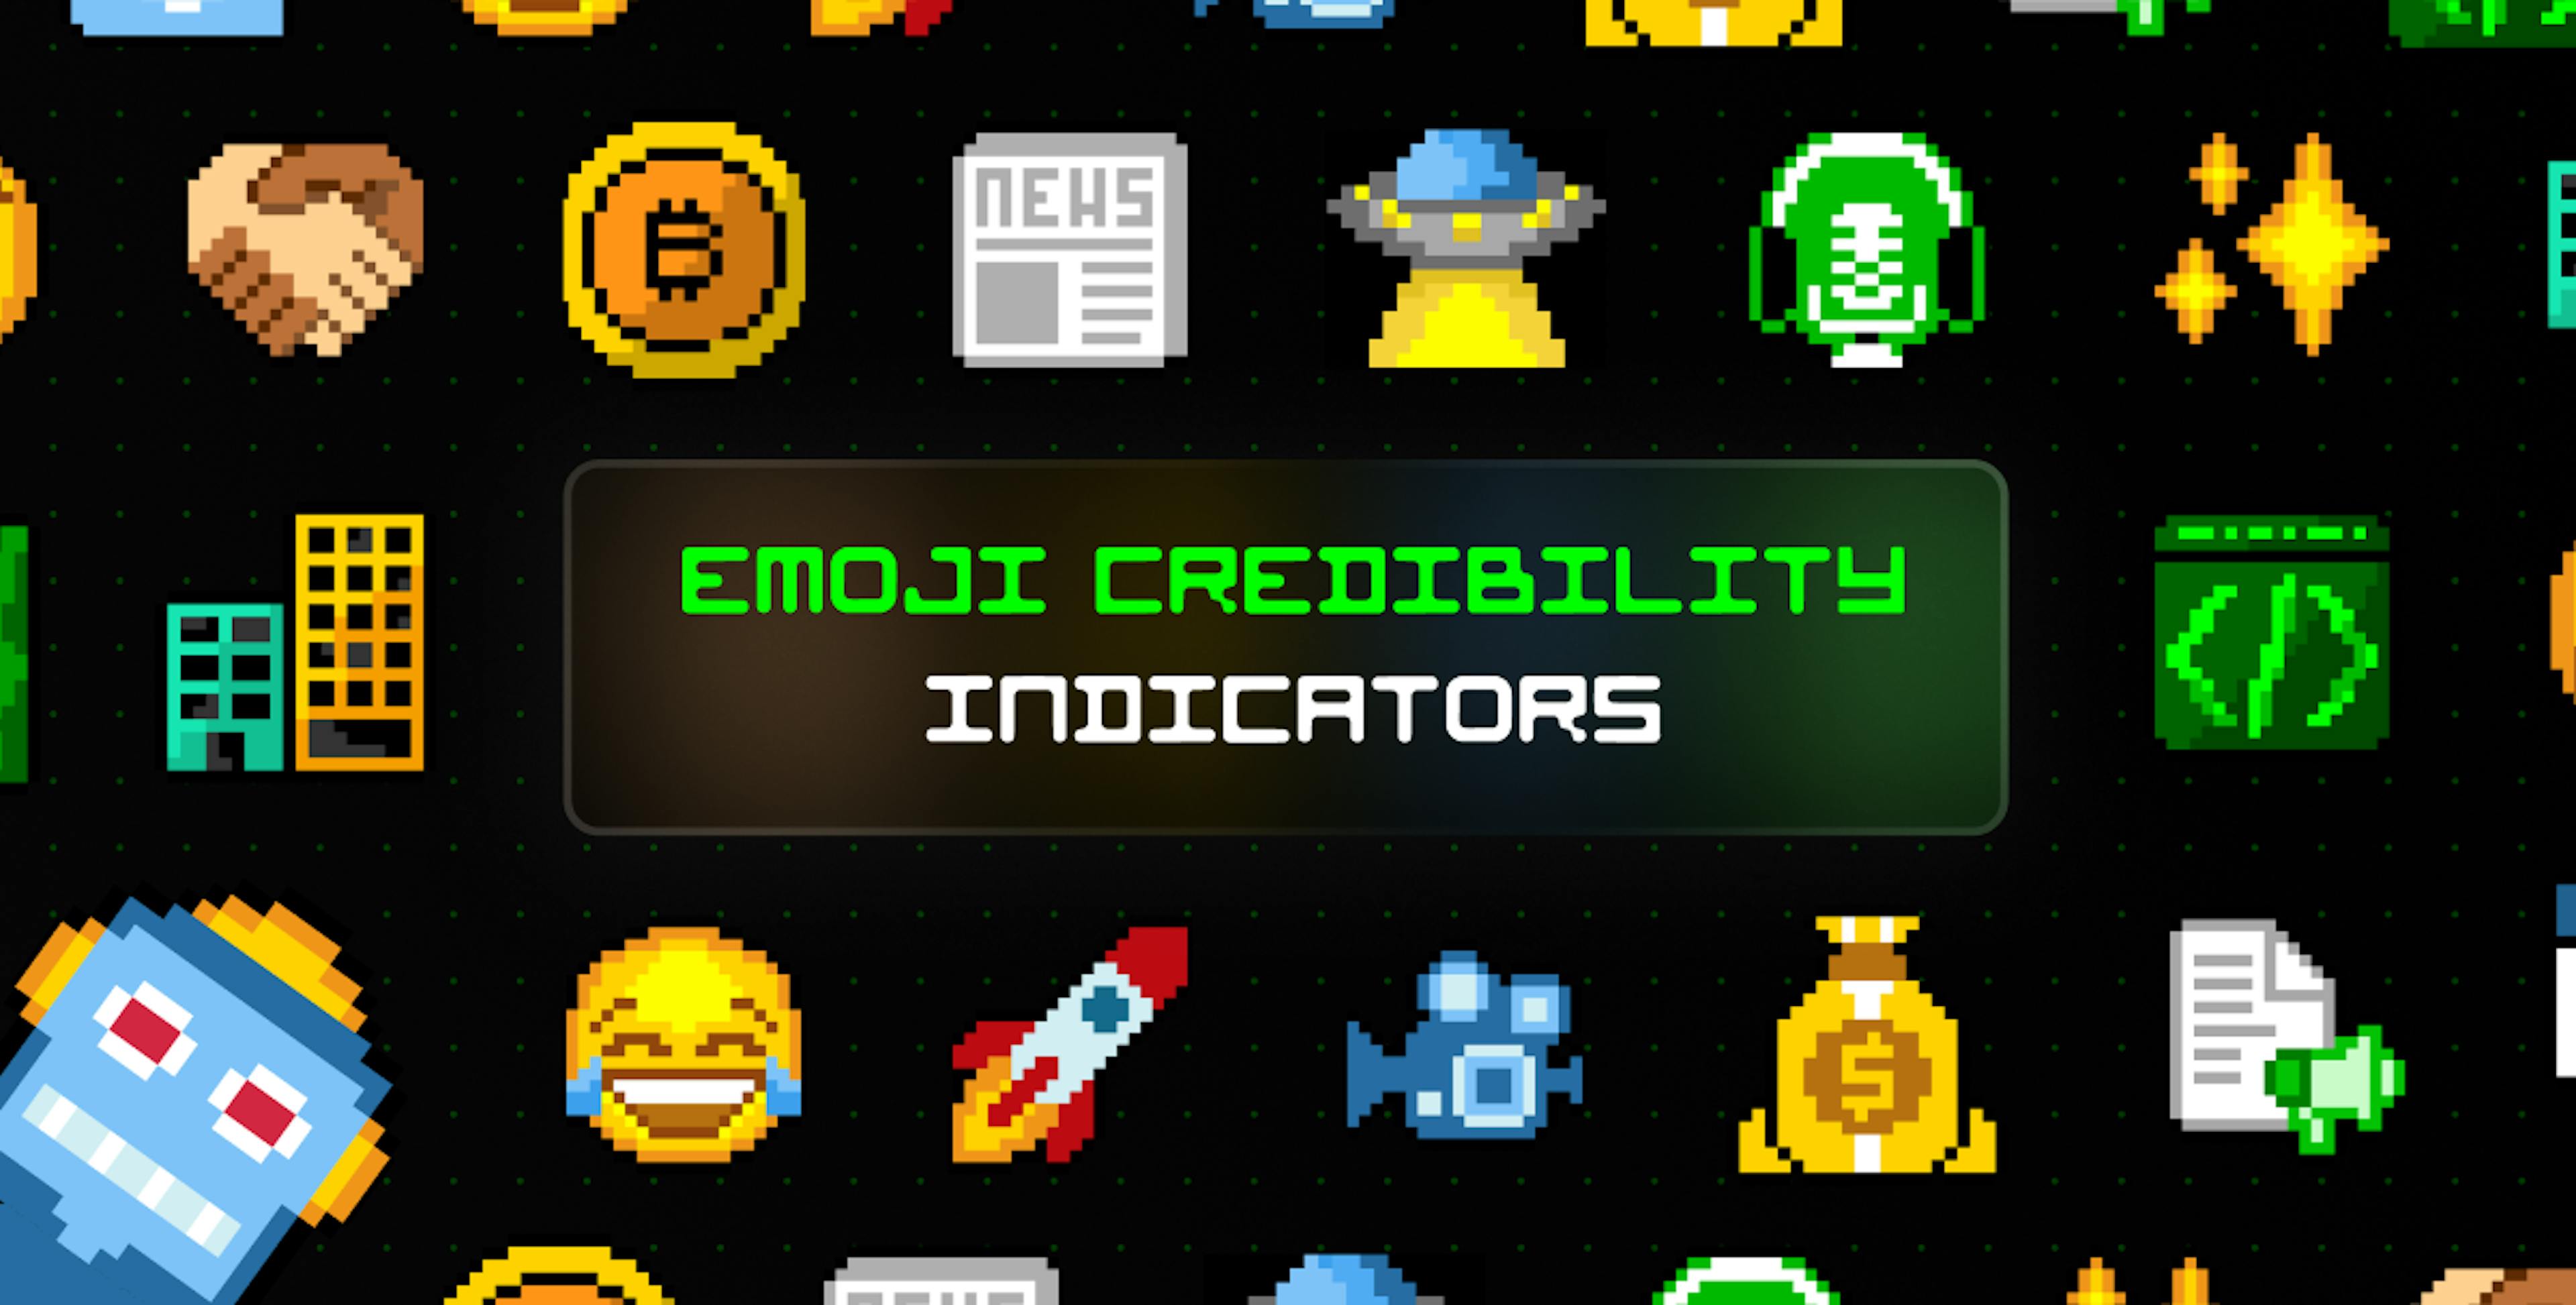 featured image - Explicación de cada indicador de credibilidad de Emoji en HackerNoon